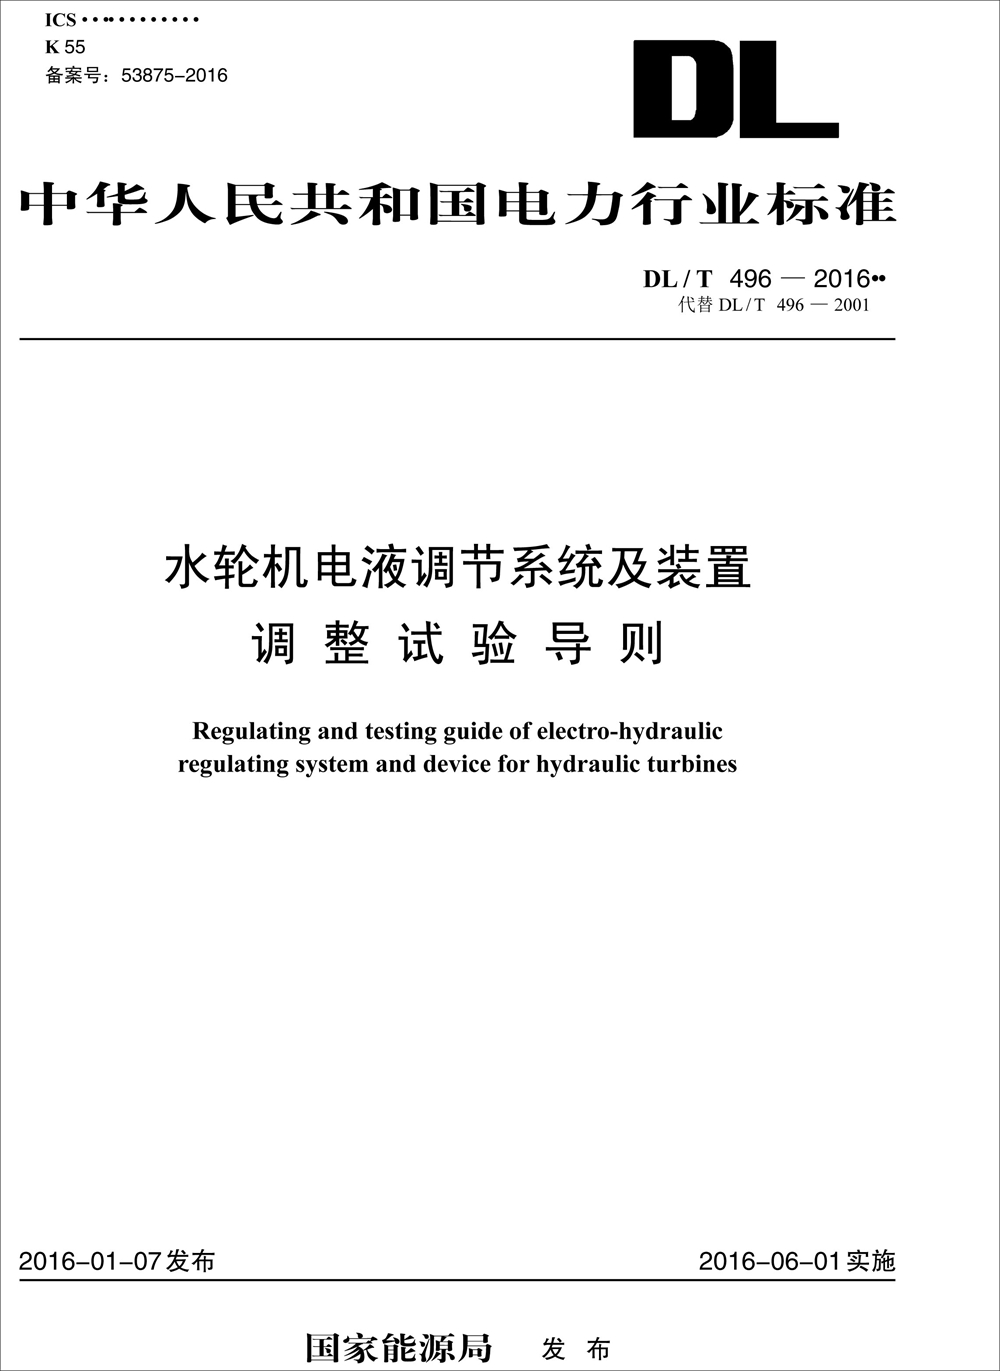 中华人民共和国电力行业标准（DL/T 496-2016）：水轮机电液调节系统及装置调整试验导则 azw3格式下载